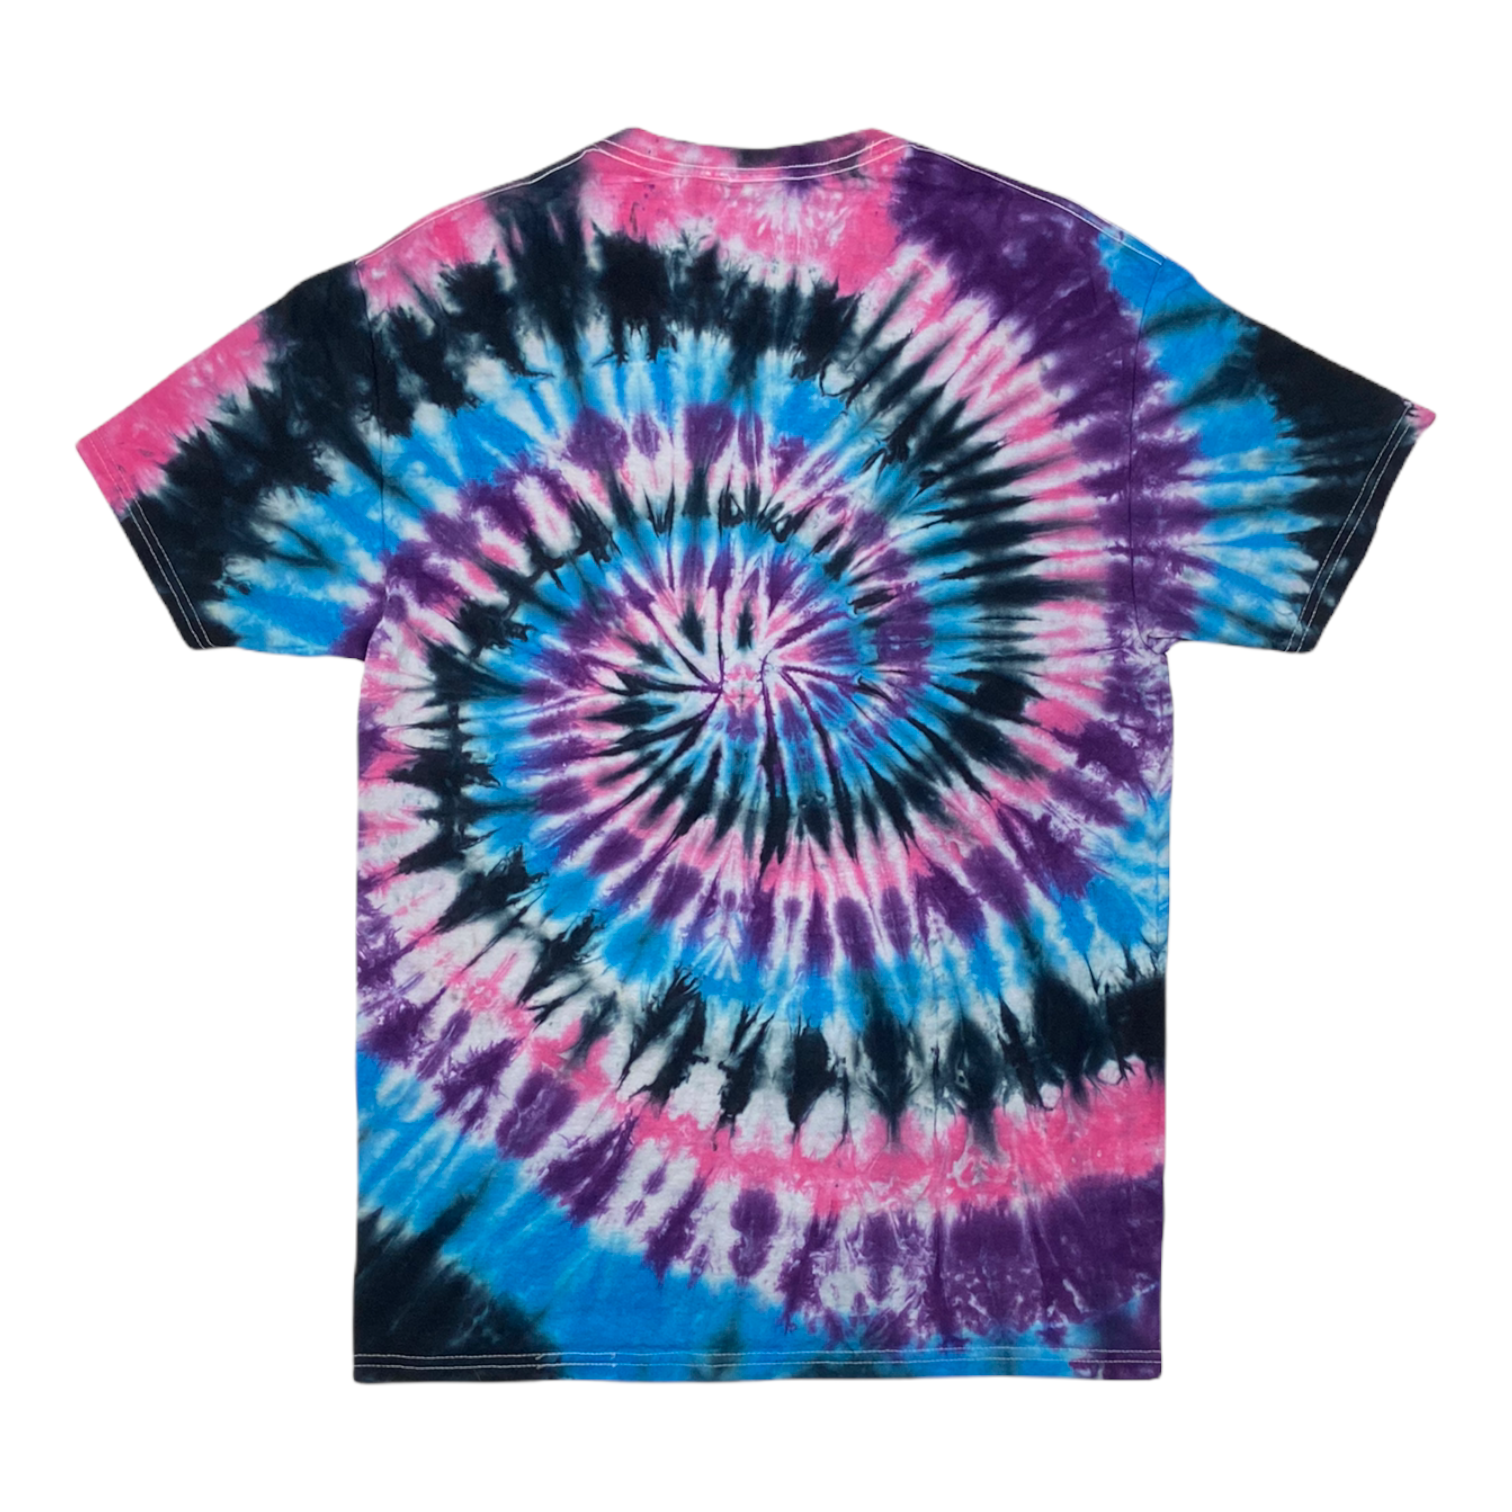 Black, Blue, Purple, & Pink Spiral Tie Dye Unisex T-Shirts